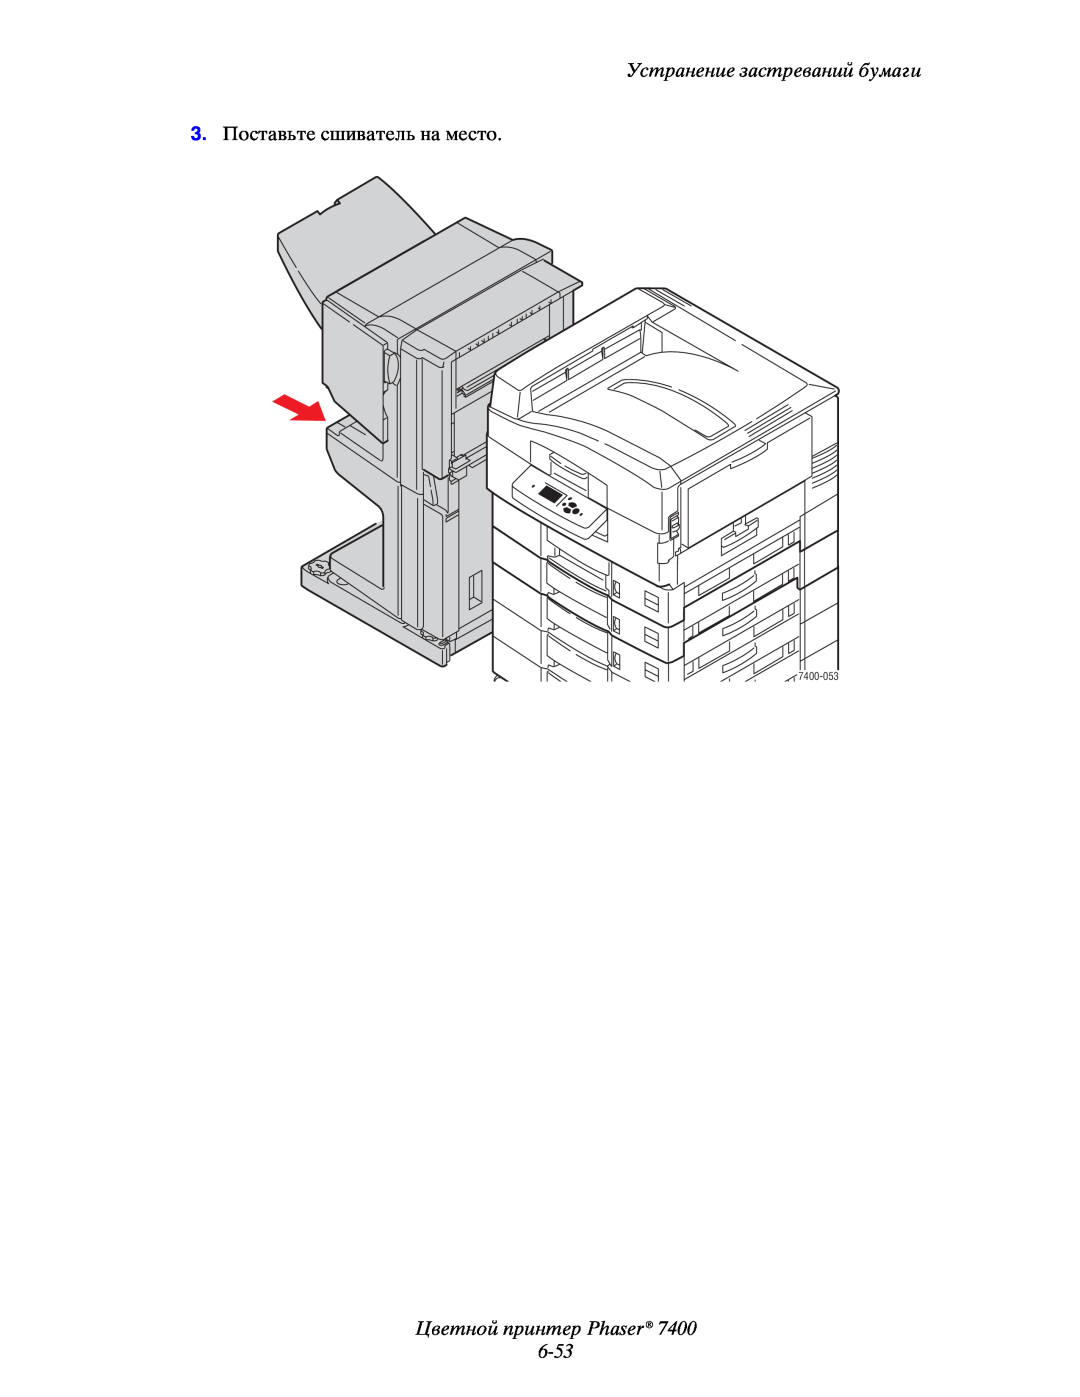 Xerox manual Цветной принтер Phaser 6-53, Устранение застреваний бумаги, 3.Поставьте сшиватель на место, 7400-053 